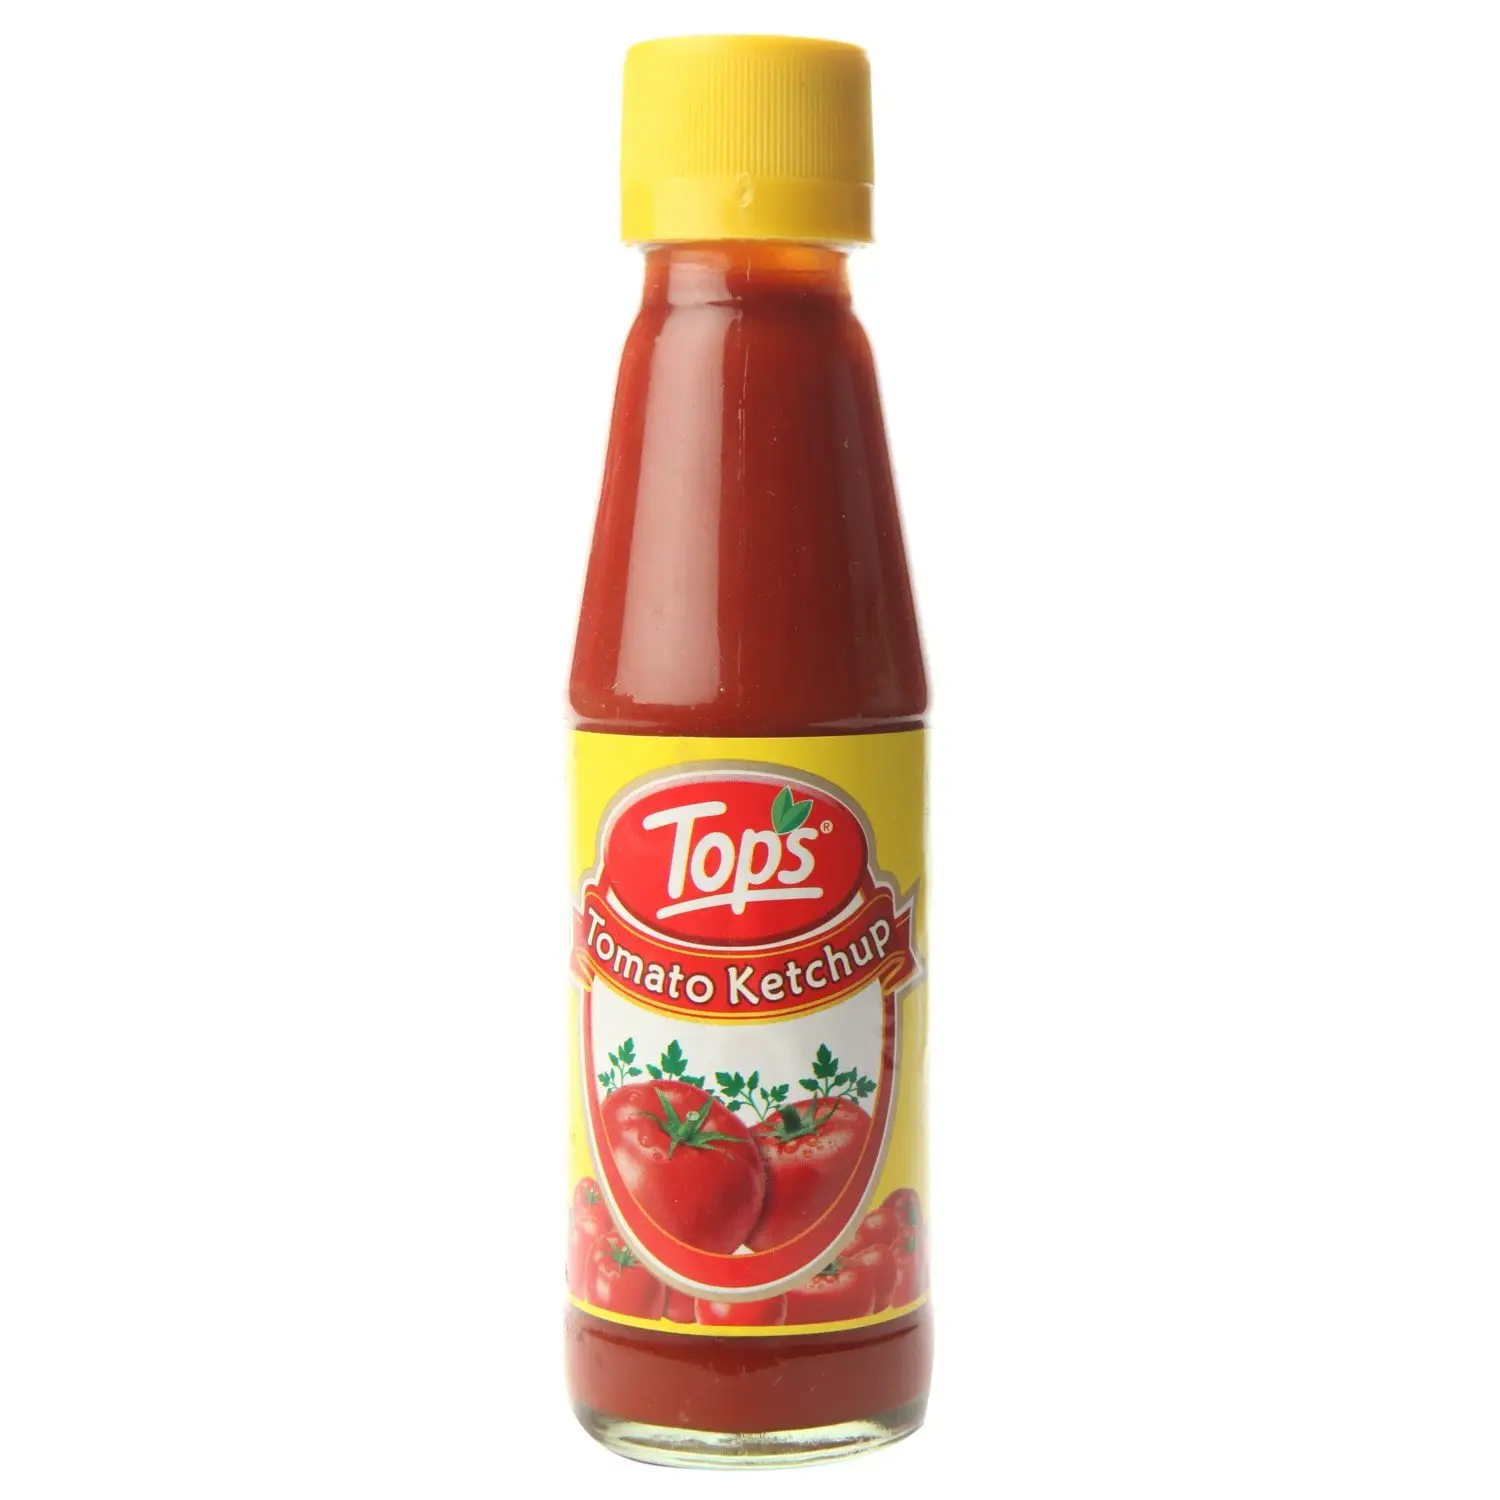 Melhor qualidade ketchup para venda de tomate ketchup fornecedores